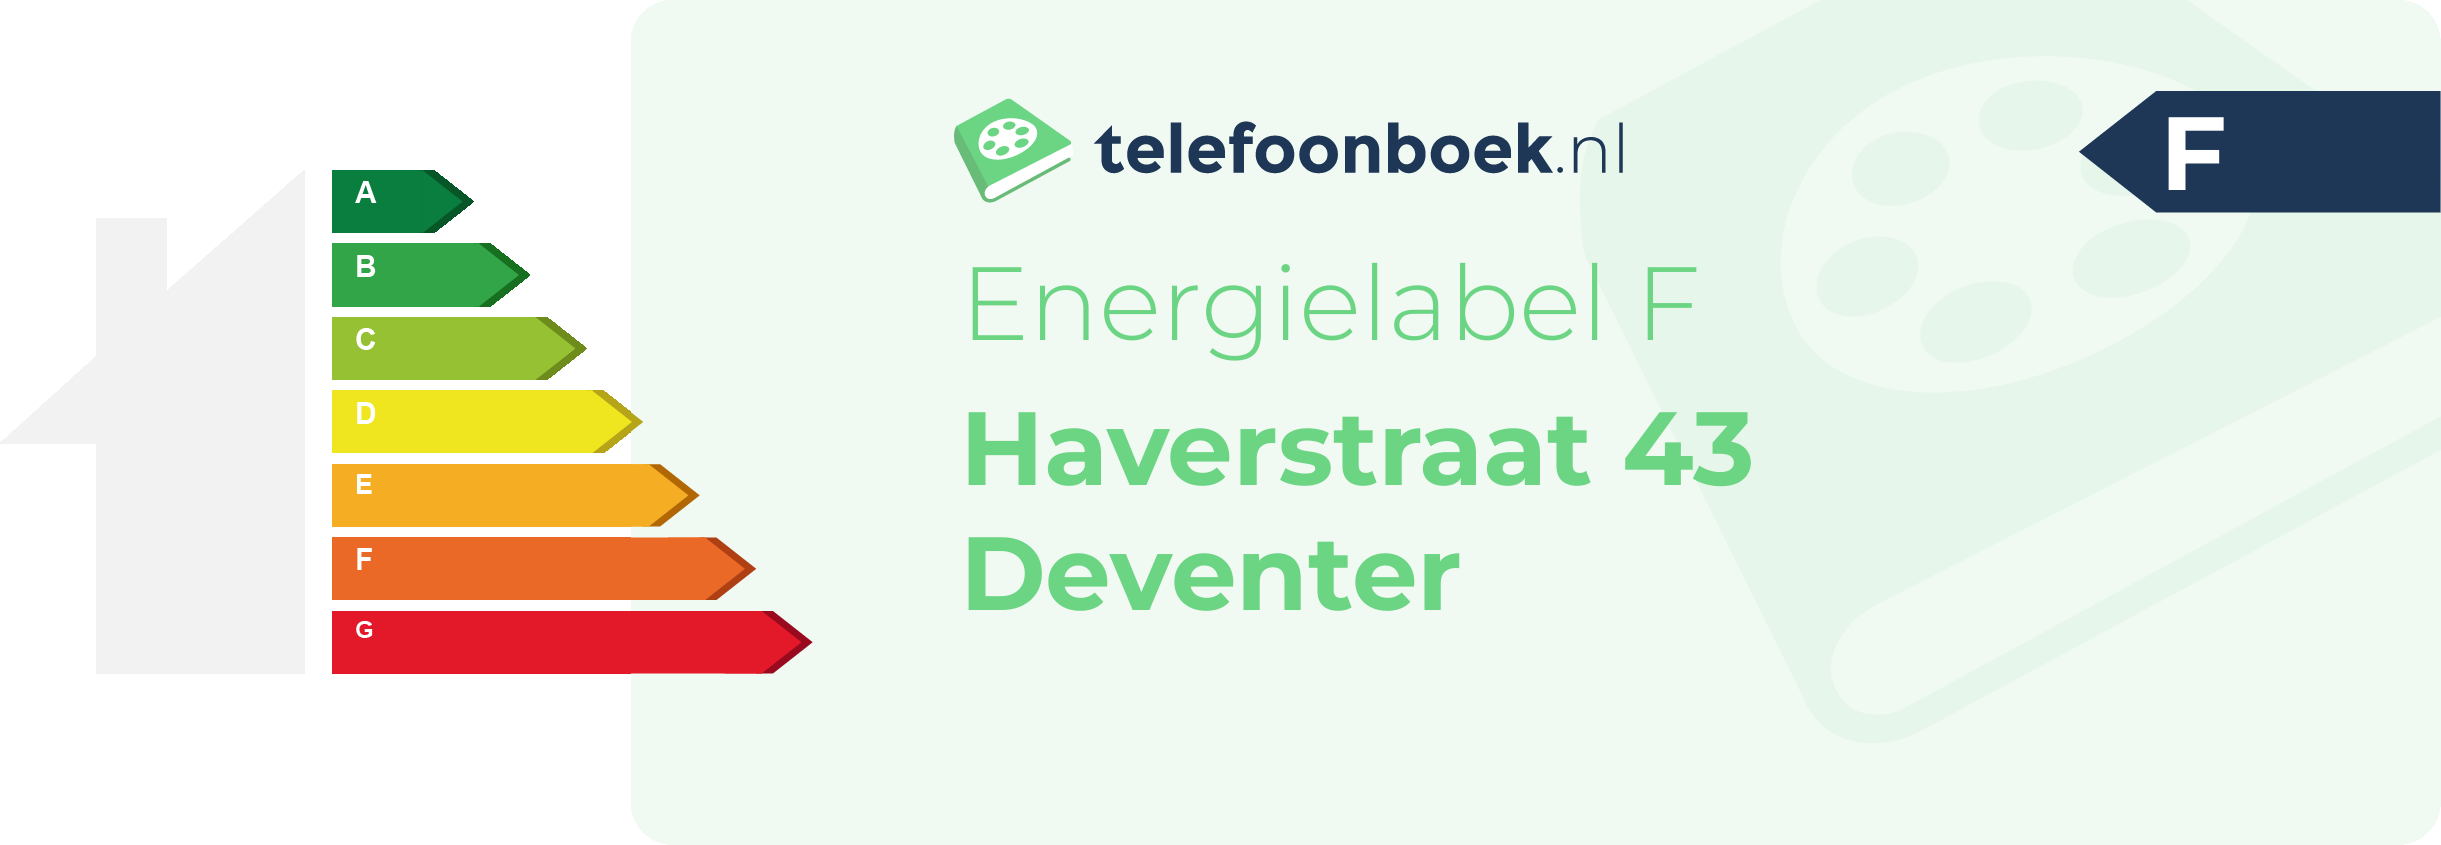 Energielabel Haverstraat 43 Deventer